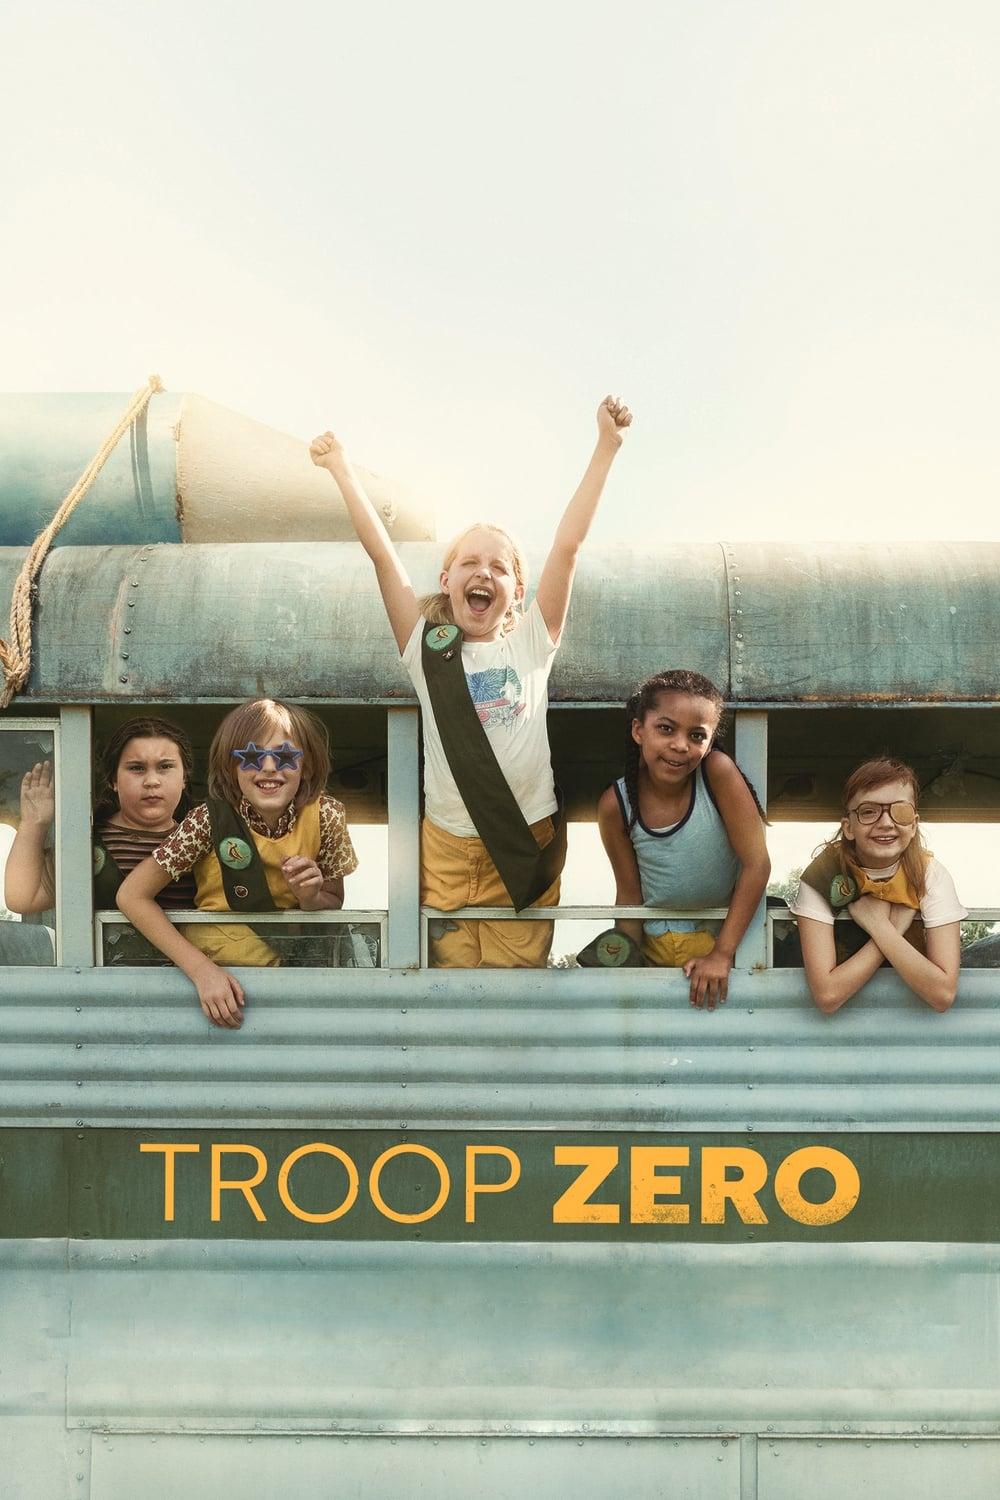 Troop Zero poster